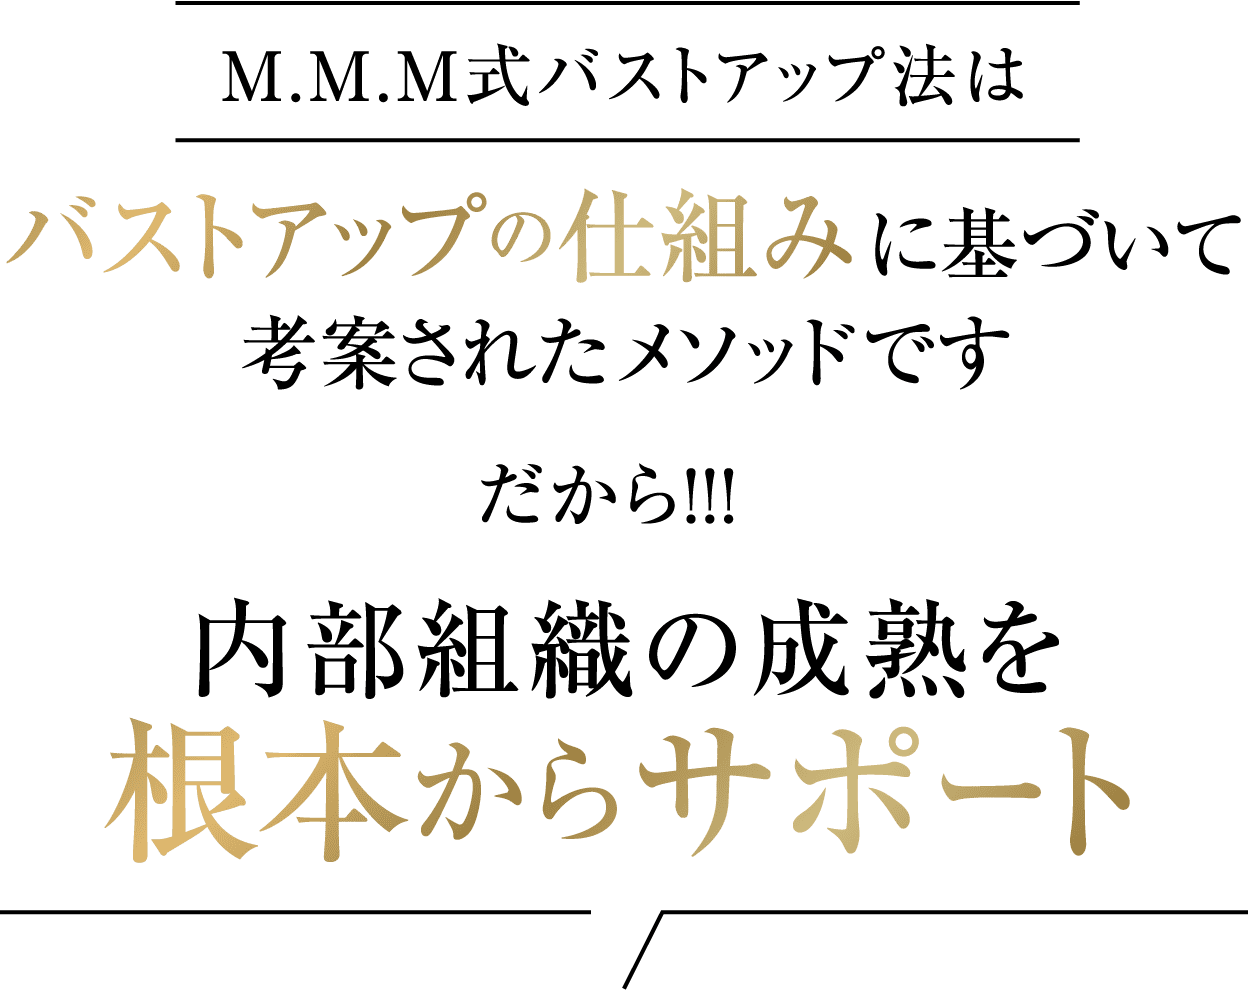 M.M.M式バストアップ法はバストアップの仕組みに基づいて考案されたメソッドです